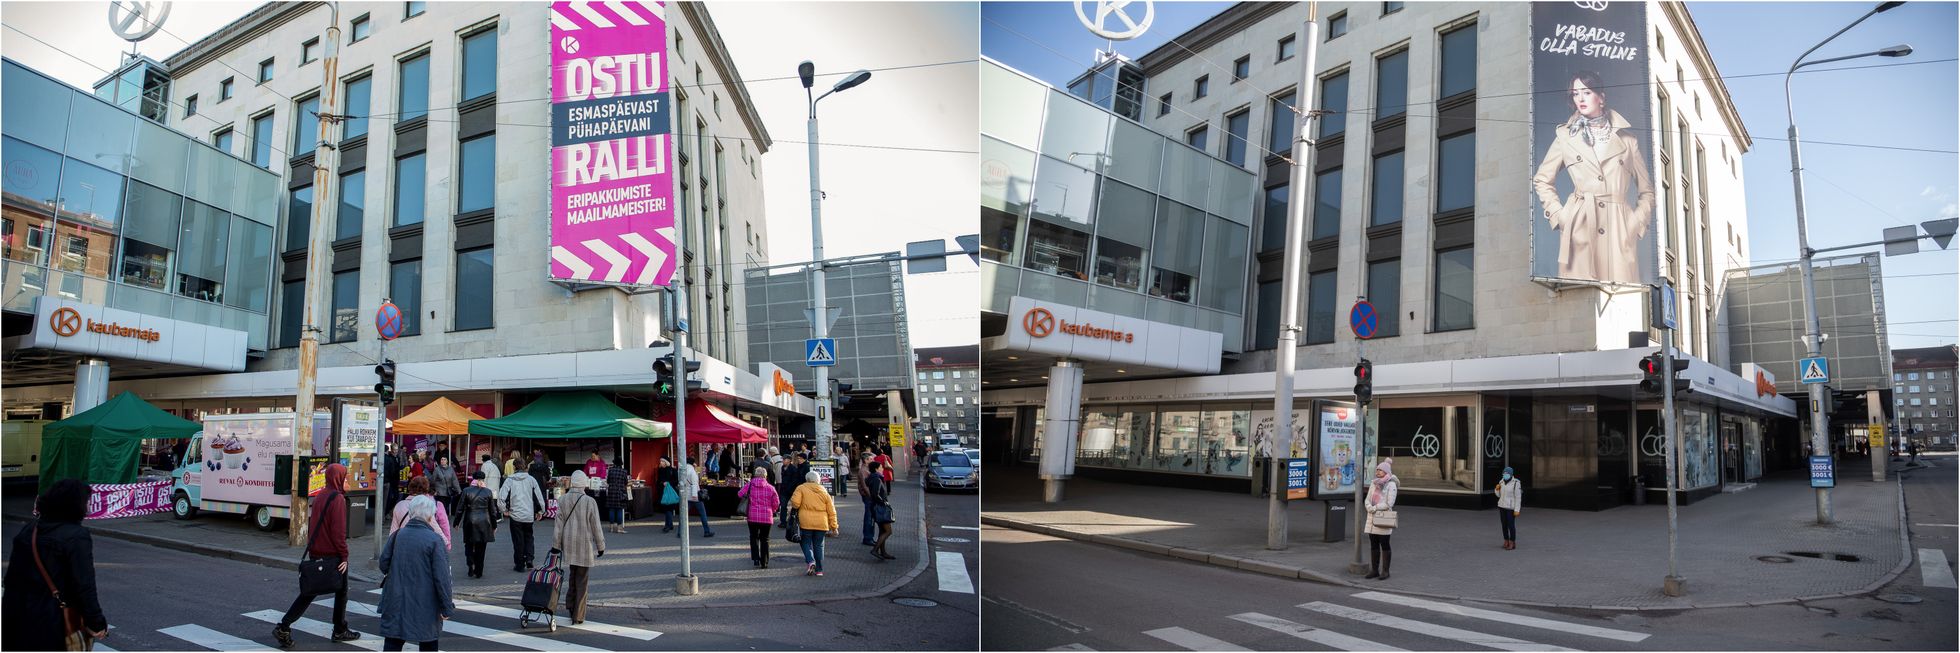 Koroonaviirus: Tallinn enne ja nüüd.